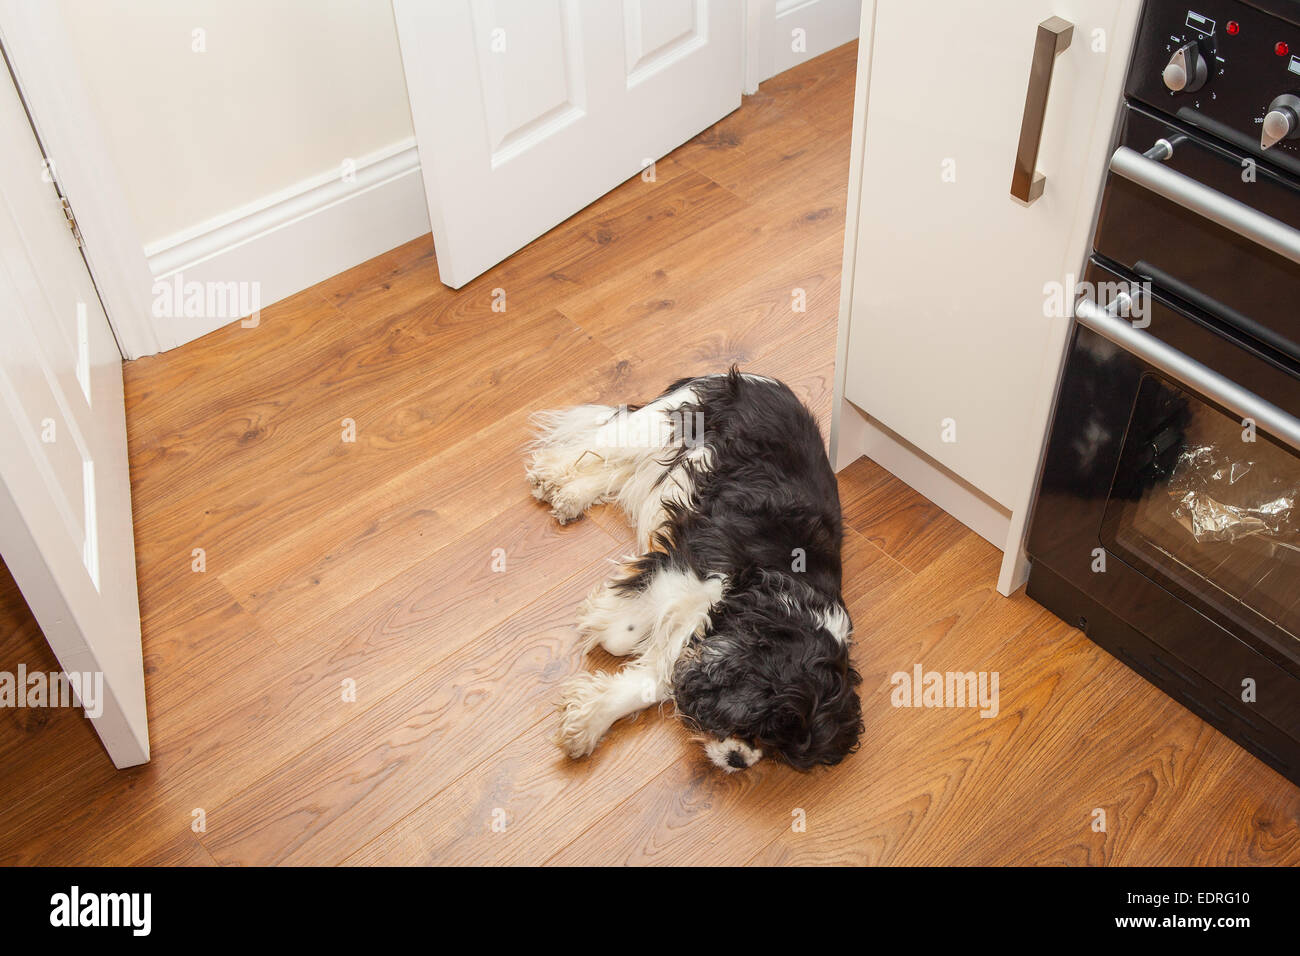 Cane addormentato sul pavimento della cucina Foto Stock